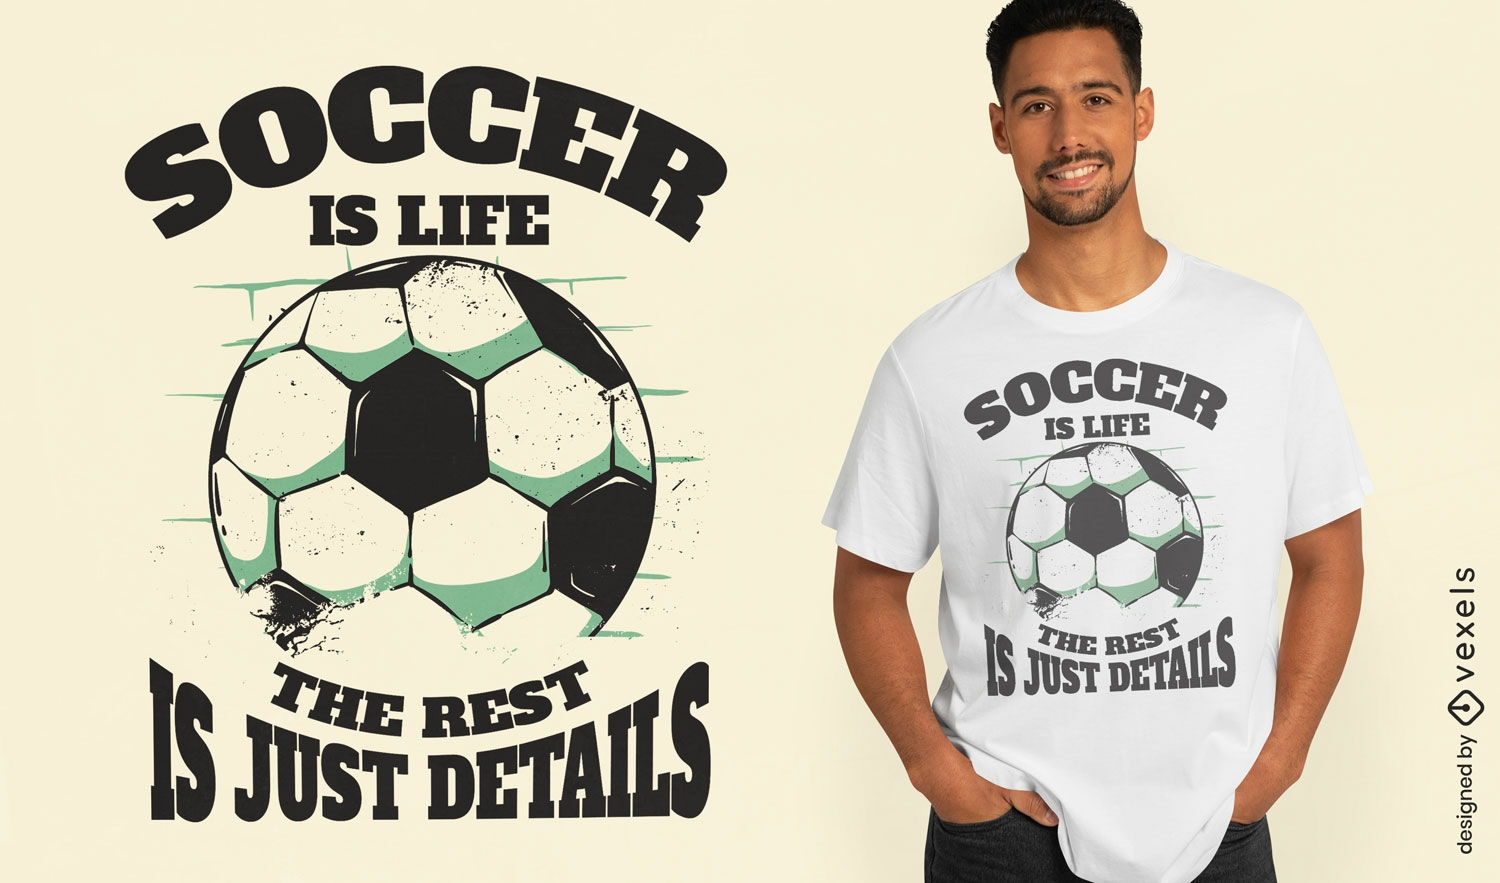 Diseño de camiseta con cita de pasión por el fútbol.